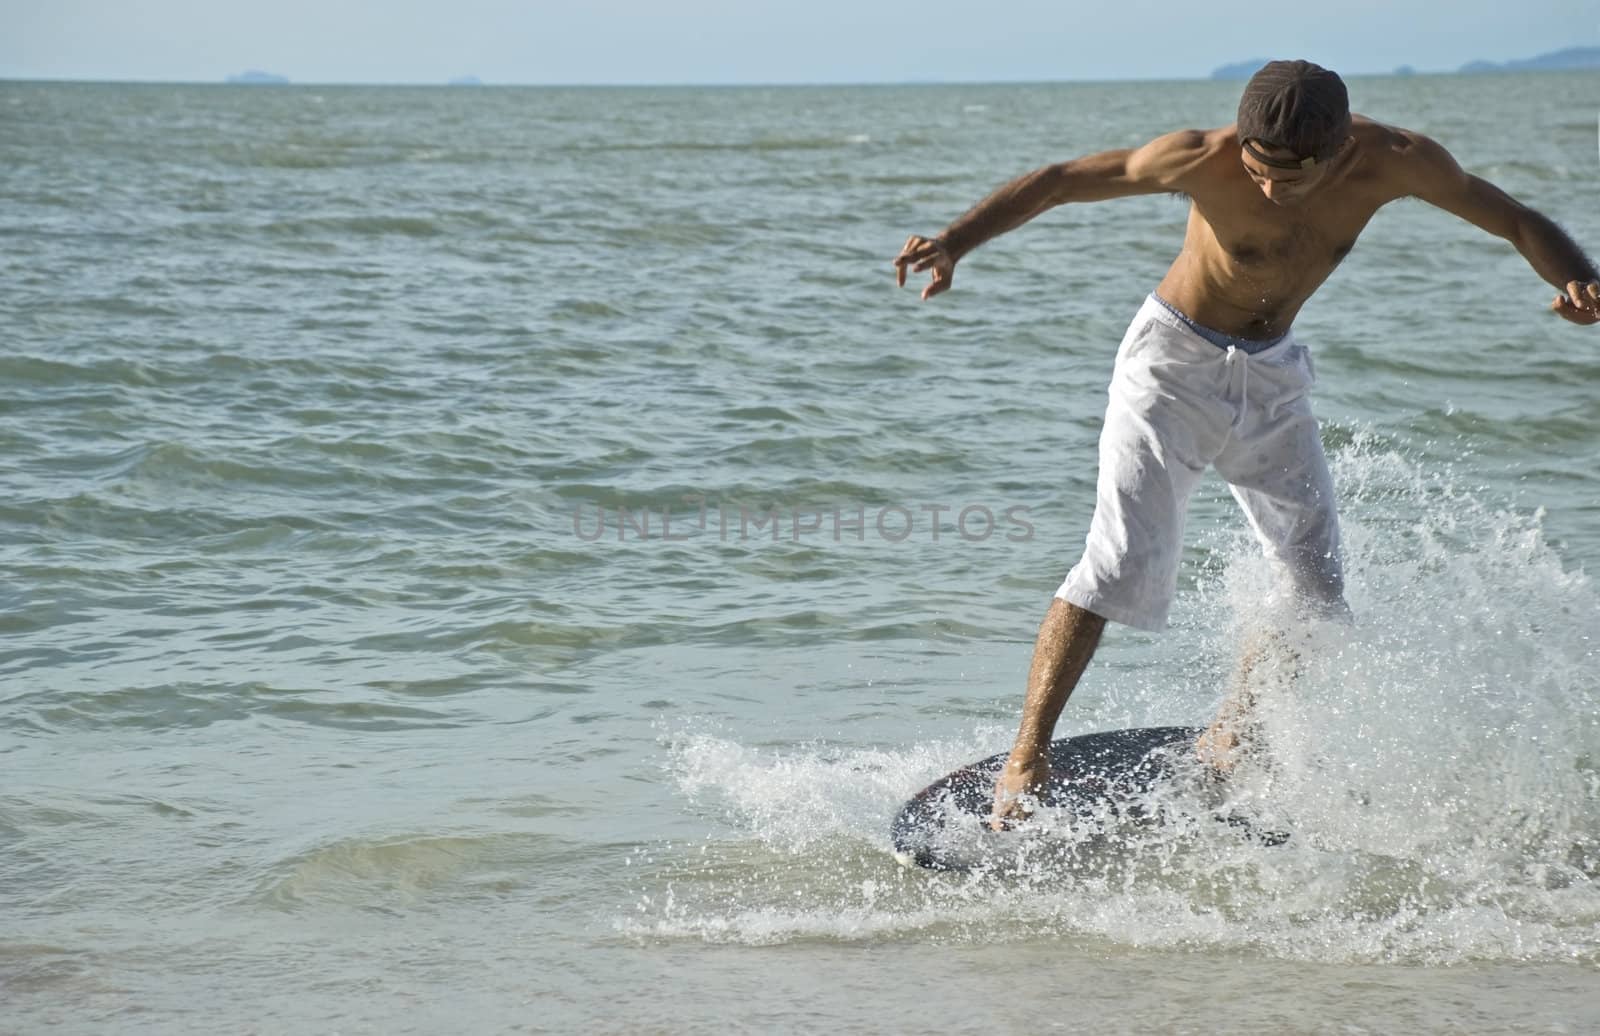 Skin boarder in a wave by ilgitano